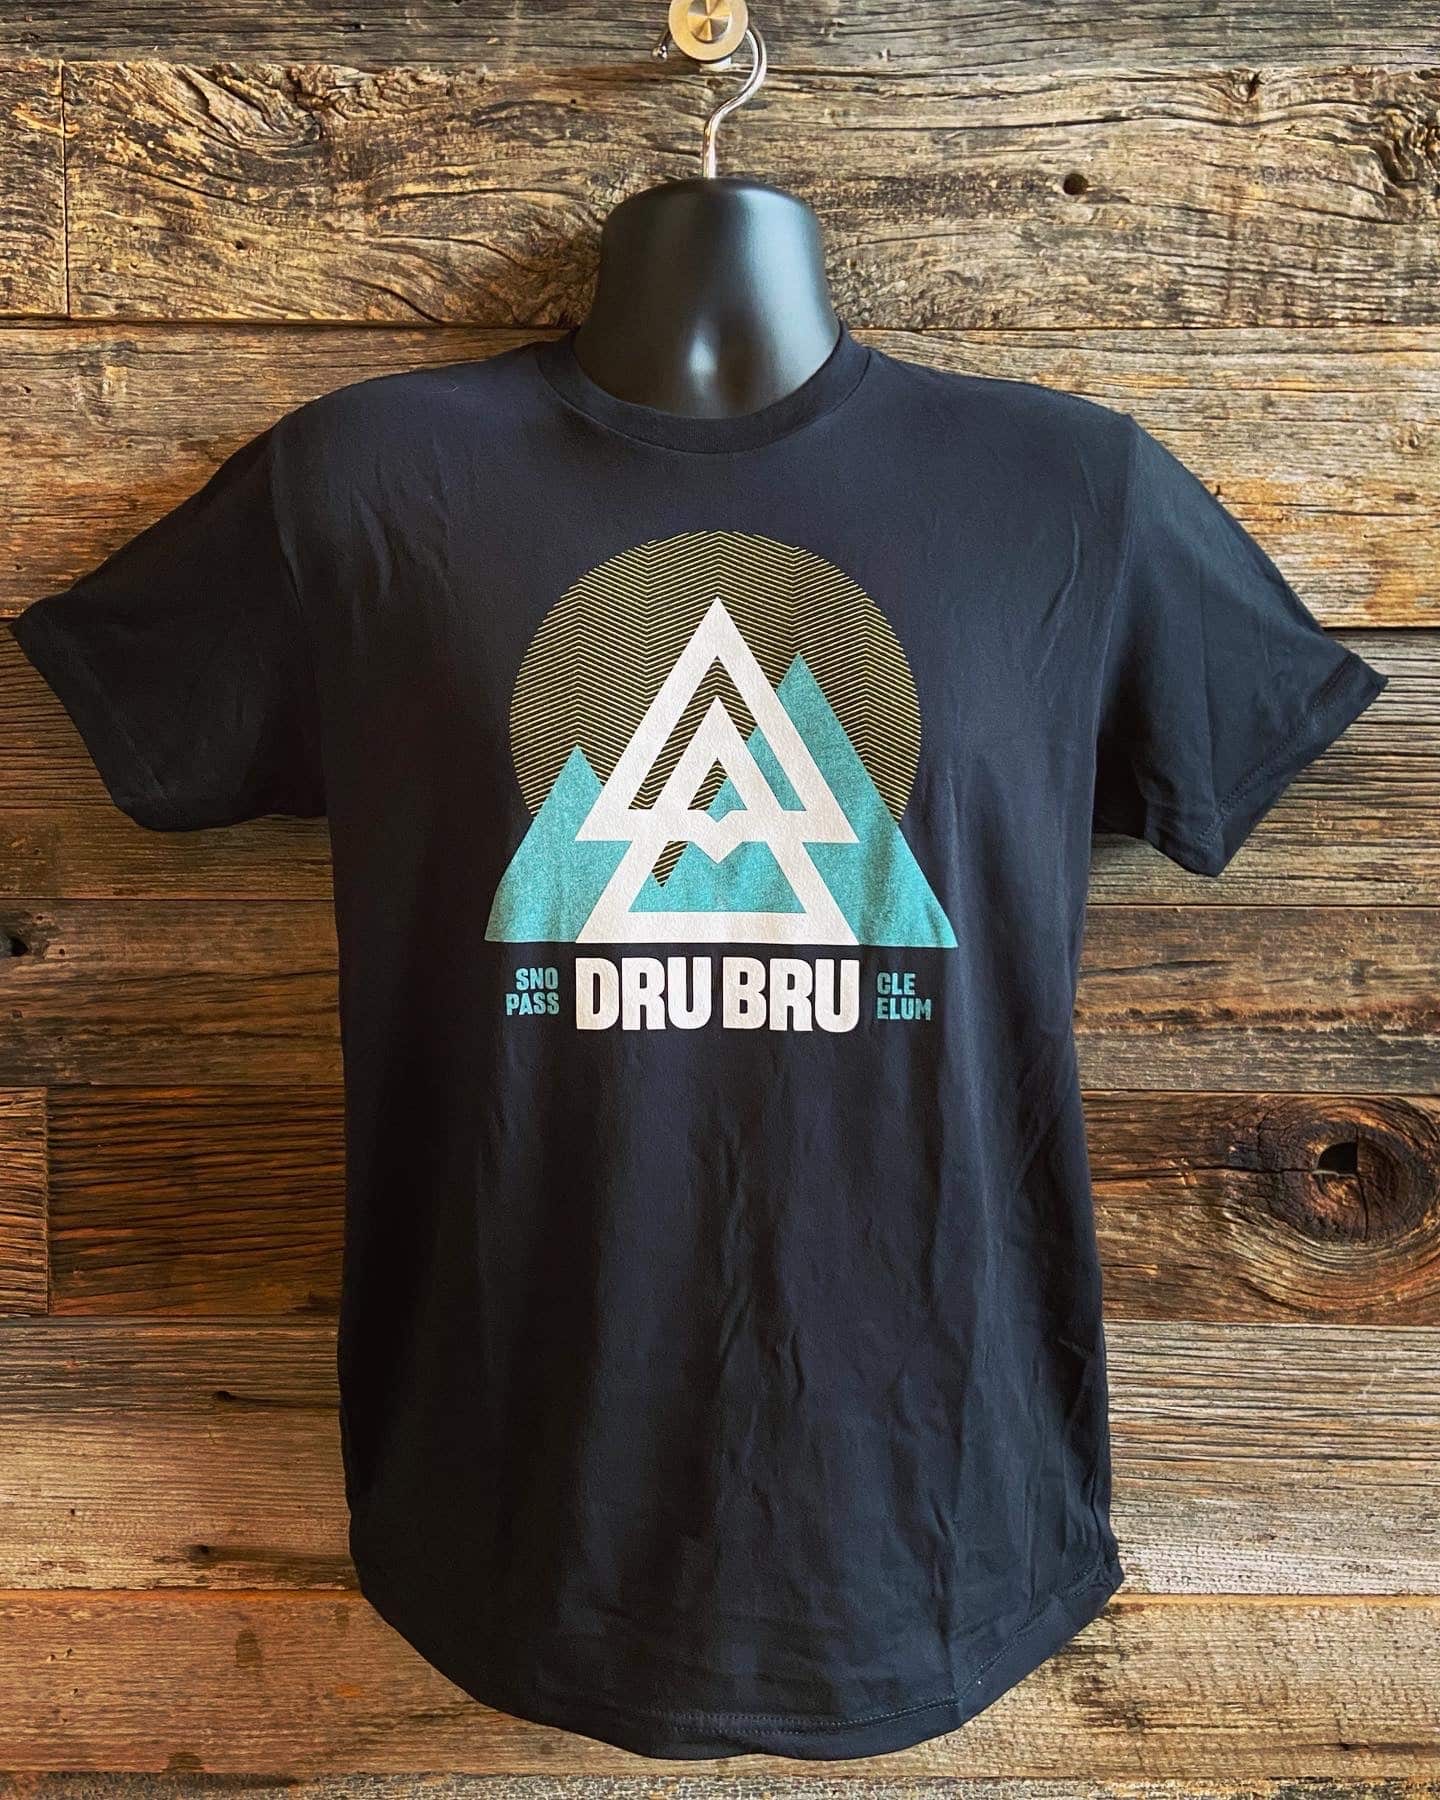 DRU BRU - Two Location Shirt - Dru Bru